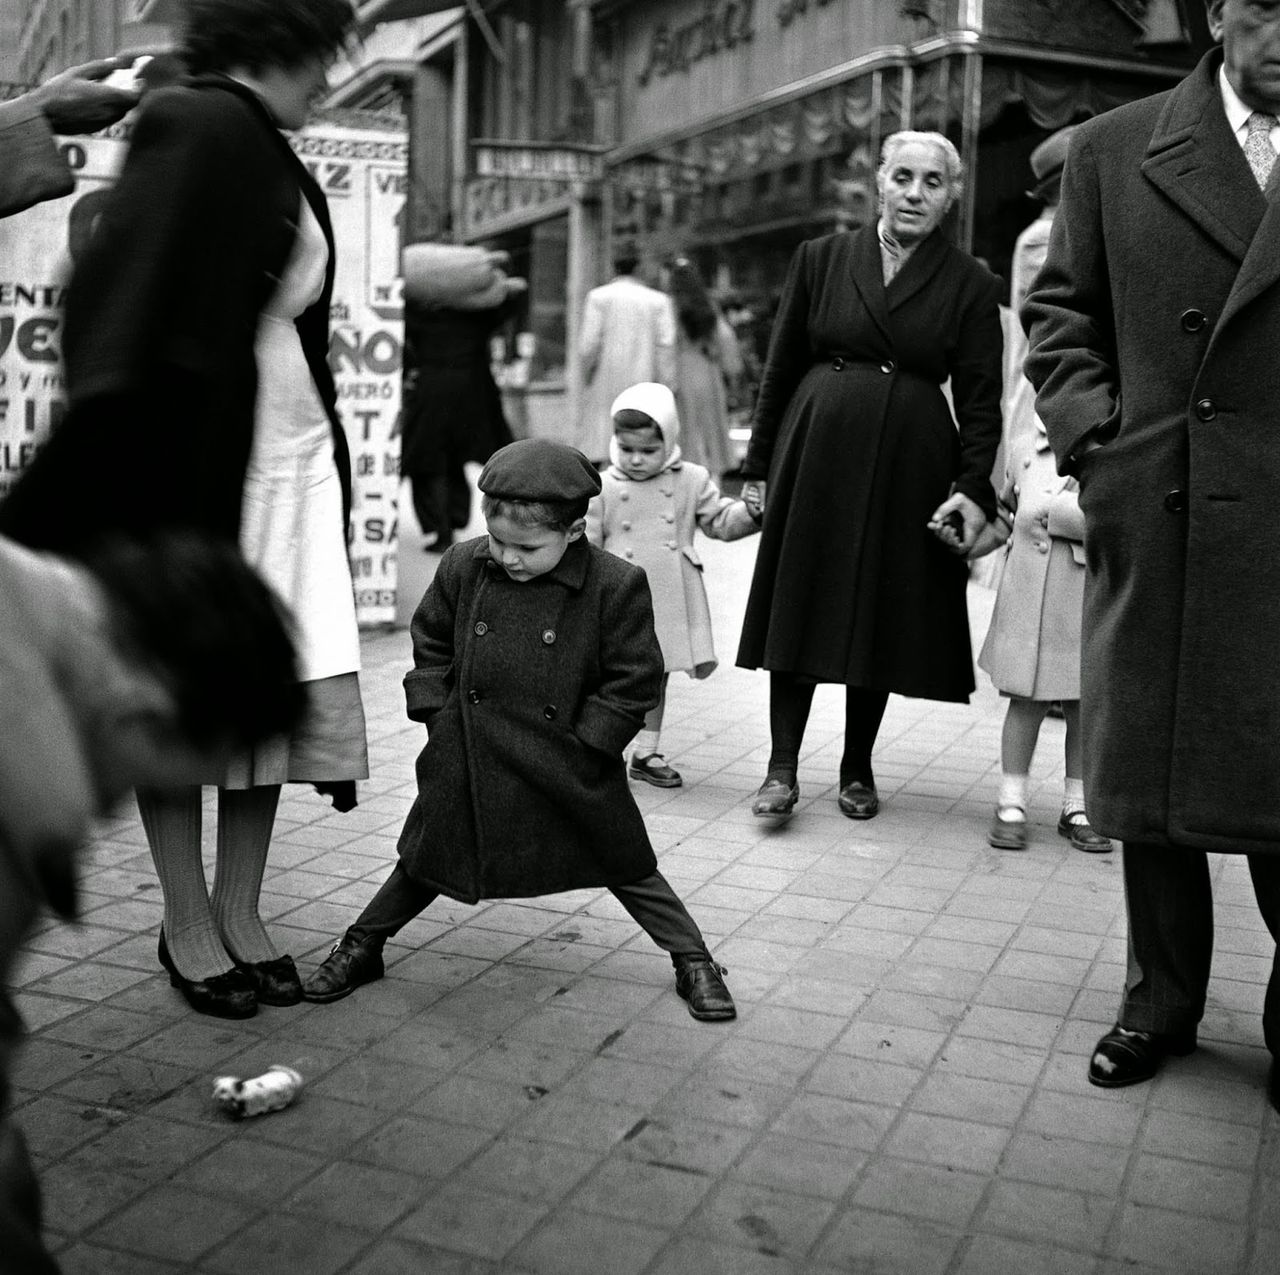 Przedstawiamy zbiór czarno-białych zdjęć wykonanych w Madrycie i Barcelonie w latach 50-tych, jak widać fotografia uliczna to dość uniwersalny gatunek, który towarzyszy nam od dość dawna.